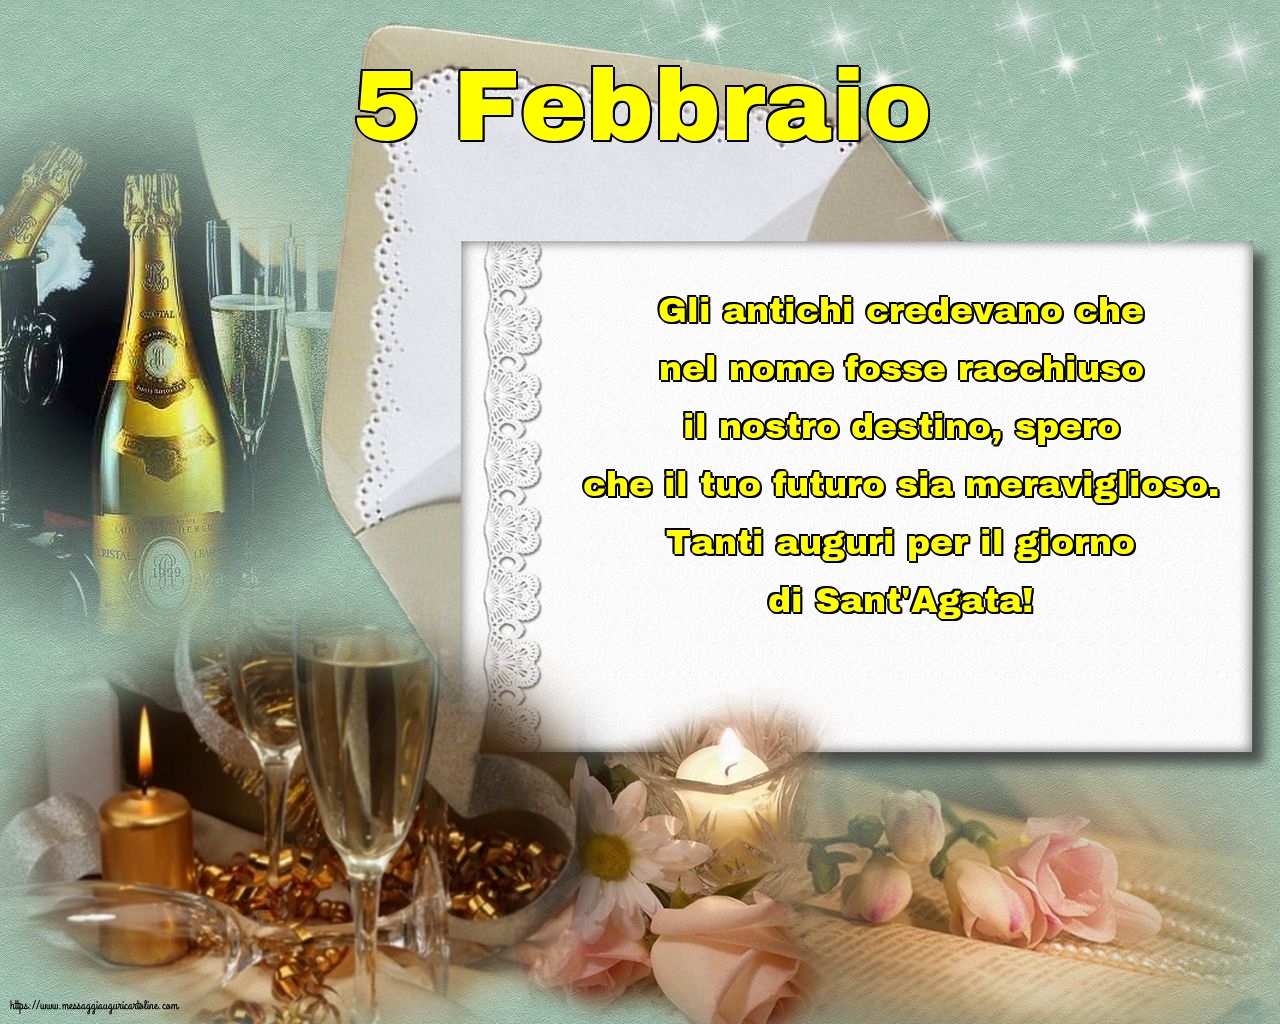 Sant' Agata 5 Febbraio - 5 Febbraio - Tanti auguri per il giorno di Sant'Agata!